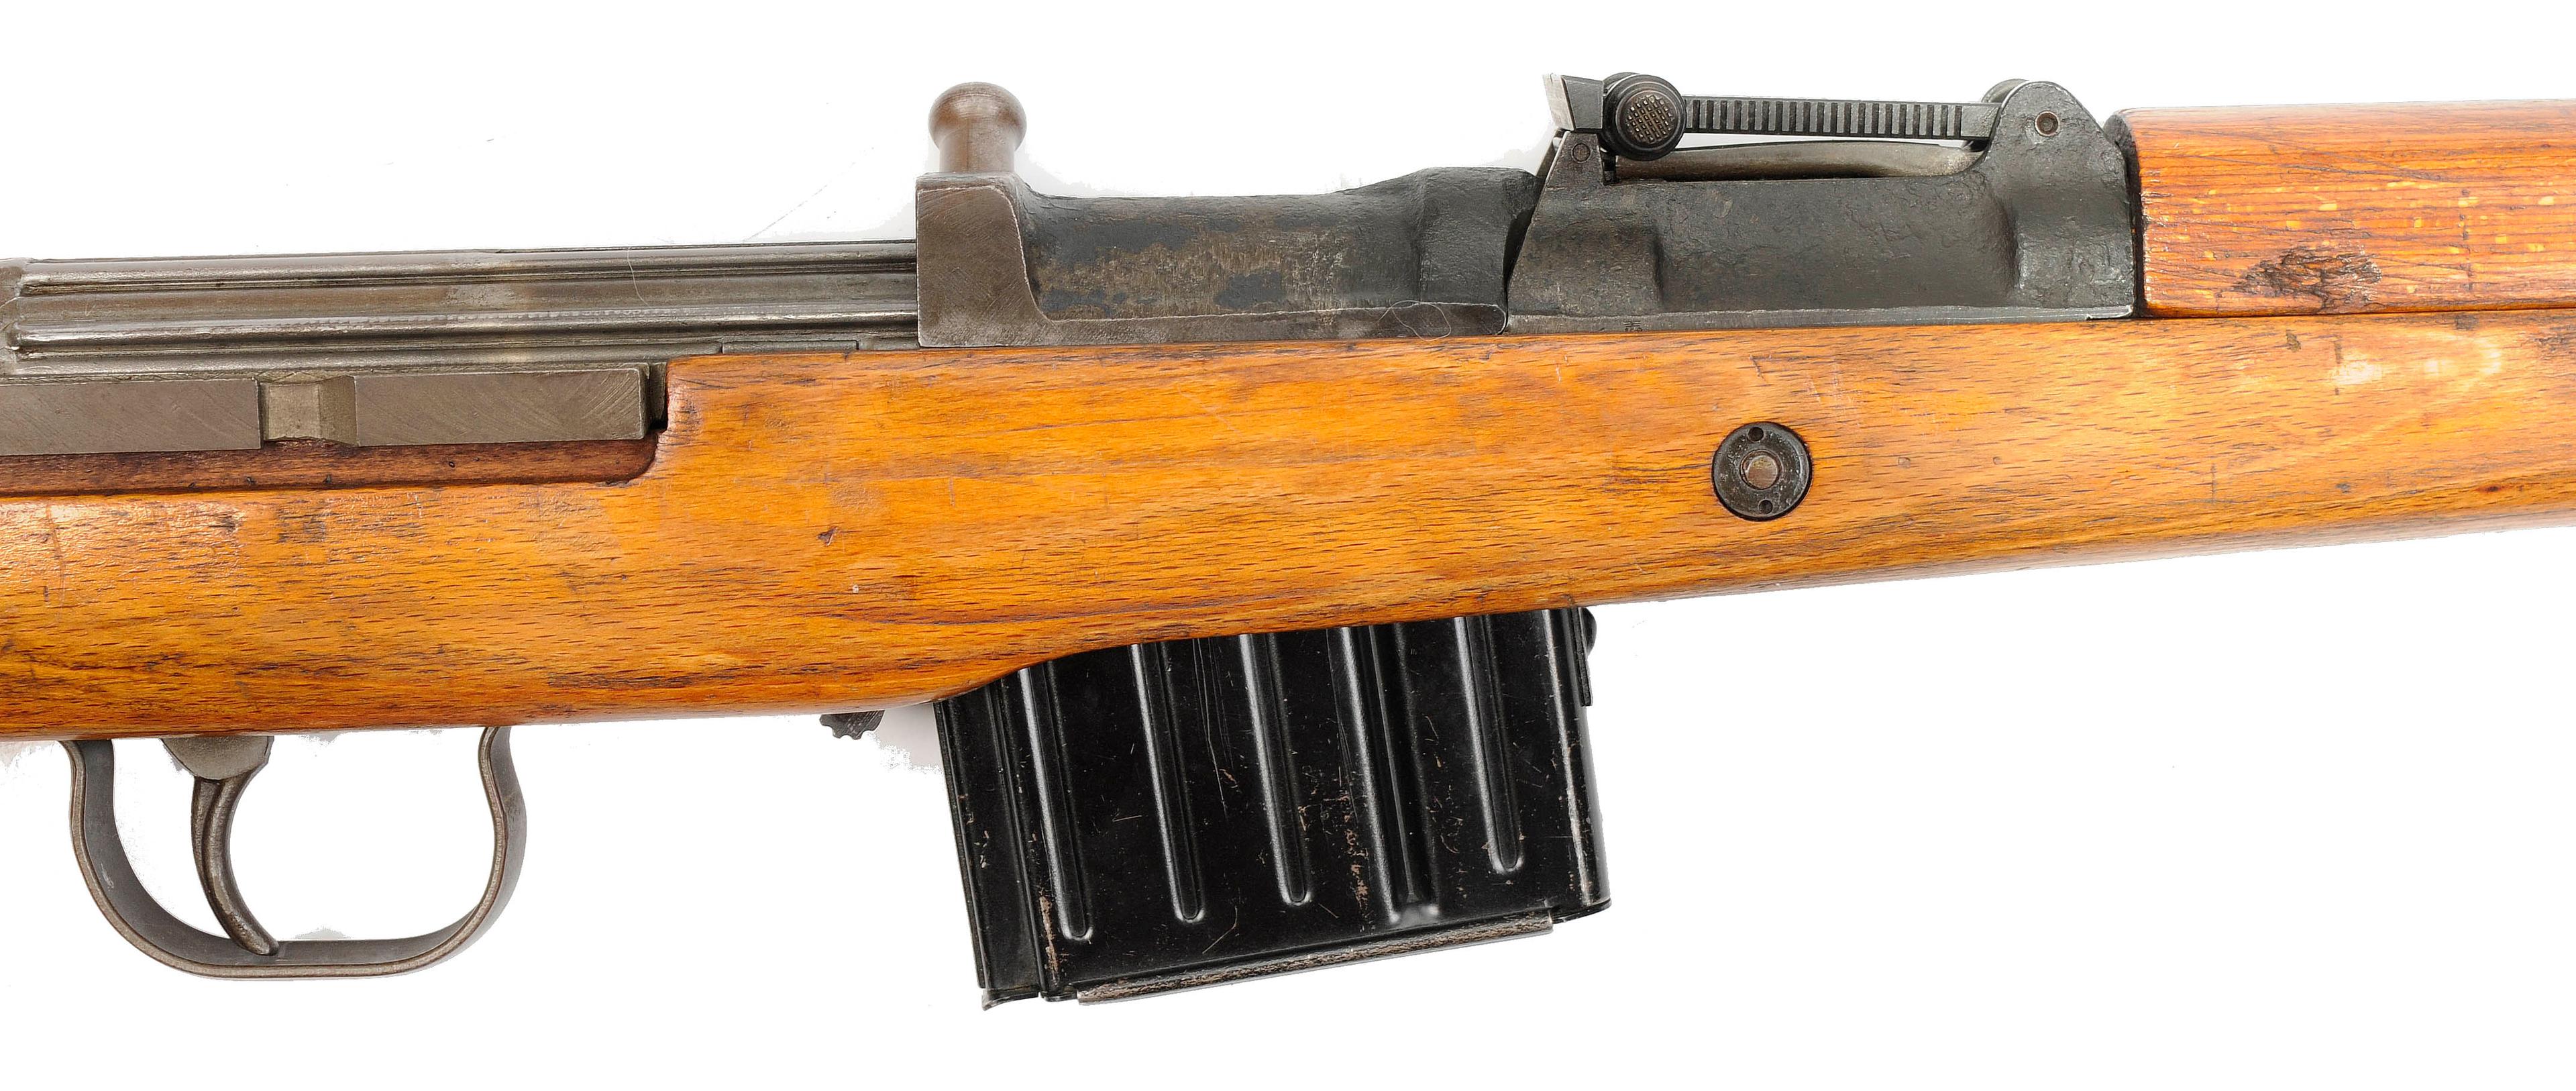 German Military WWII era K43 8mm Semi-Automatic Rifle - FFL # 7573b  (RXX 1)